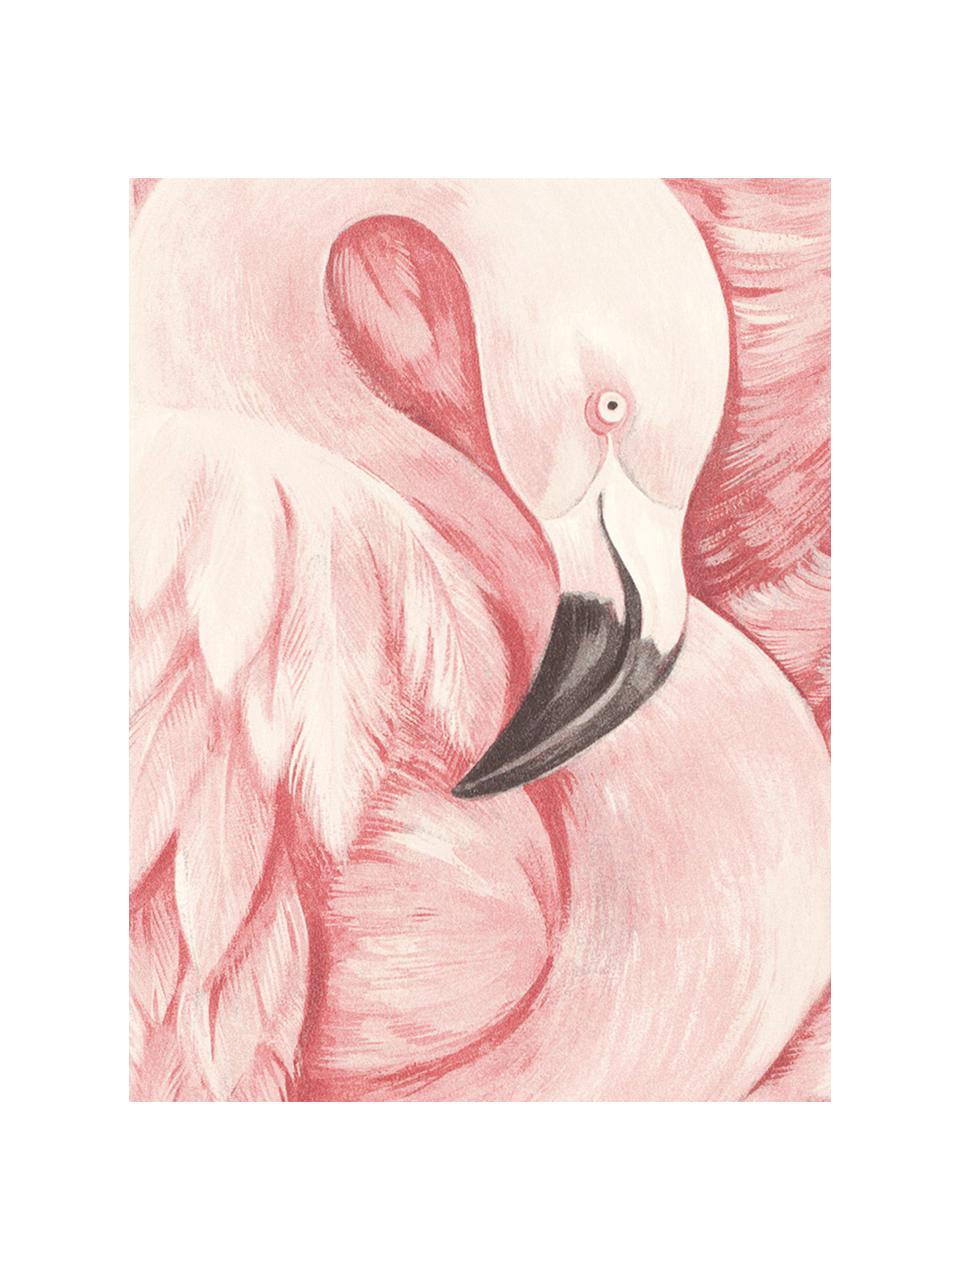 Tapeta Pinky, Włóknina, Różowy, 53 x 1005 cm